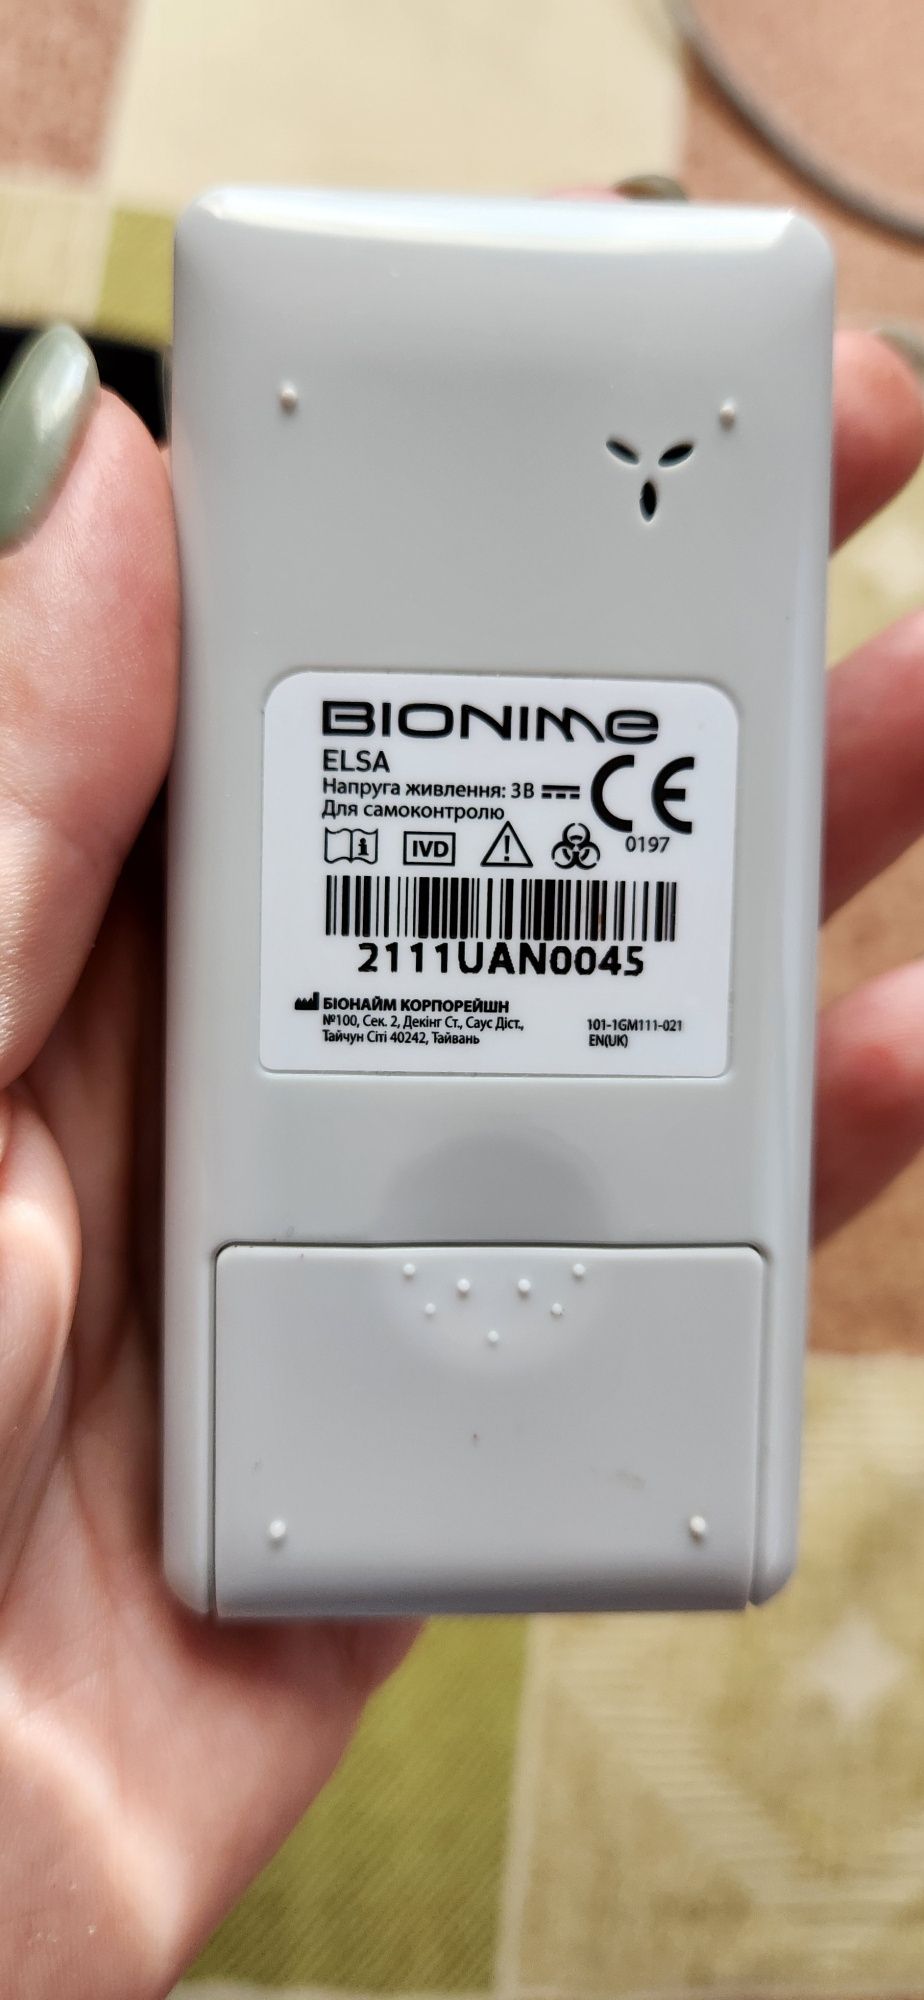 Глюкометр bionime ringtest elsa новый с пленкой с ручкой для прокалыва